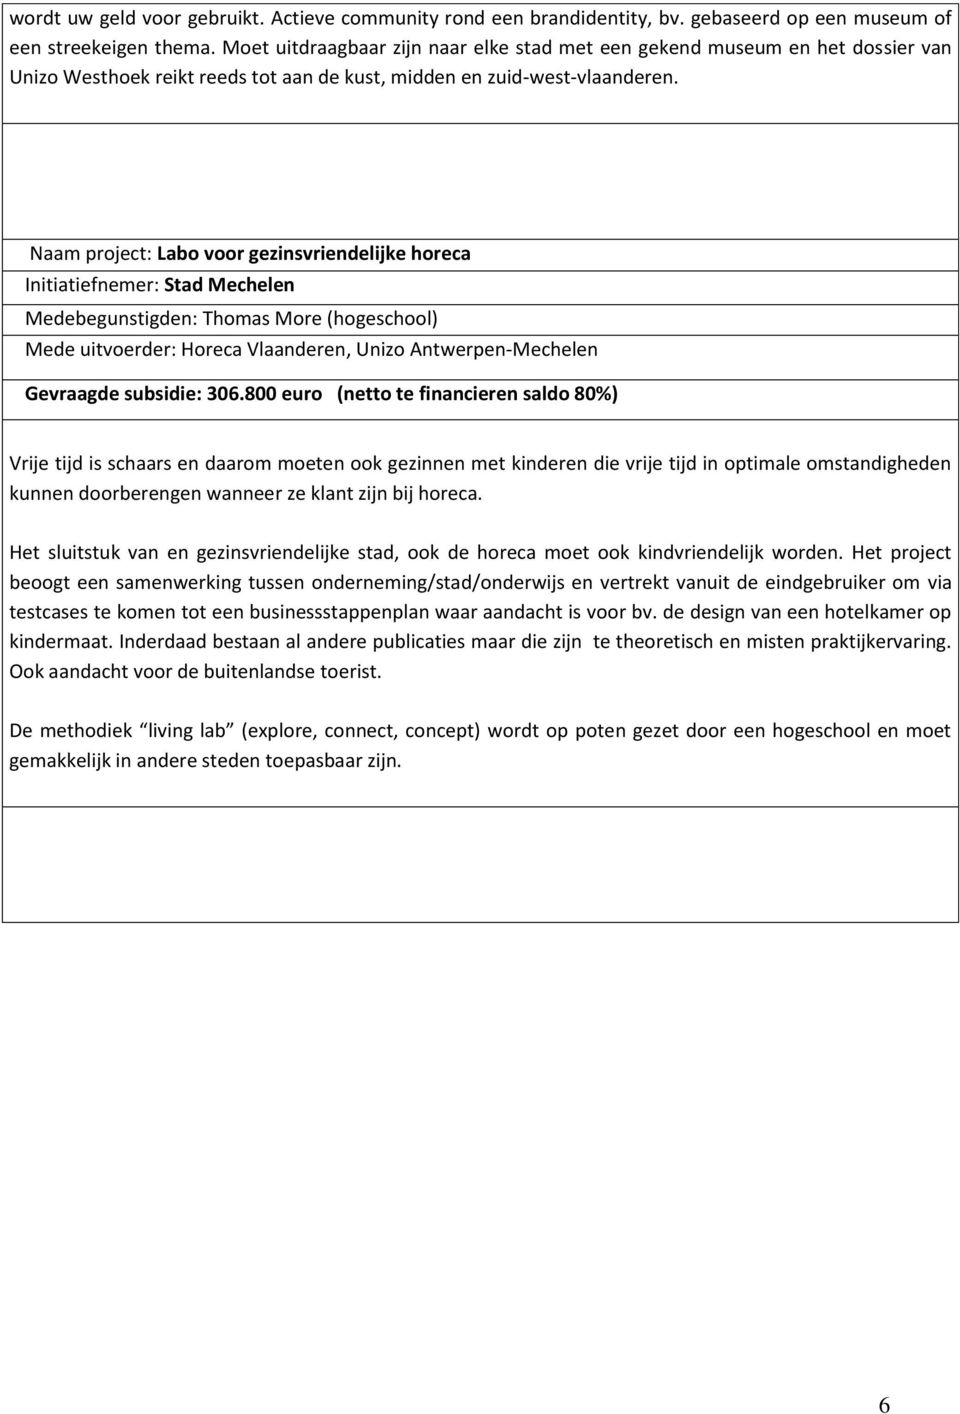 Naam project: Labo voor gezinsvriendelijke horeca Initiatiefnemer: Stad Mechelen Medebegunstigden: Thomas More (hogeschool) Mede uitvoerder: Horeca Vlaanderen, Unizo Antwerpen-Mechelen Gevraagde